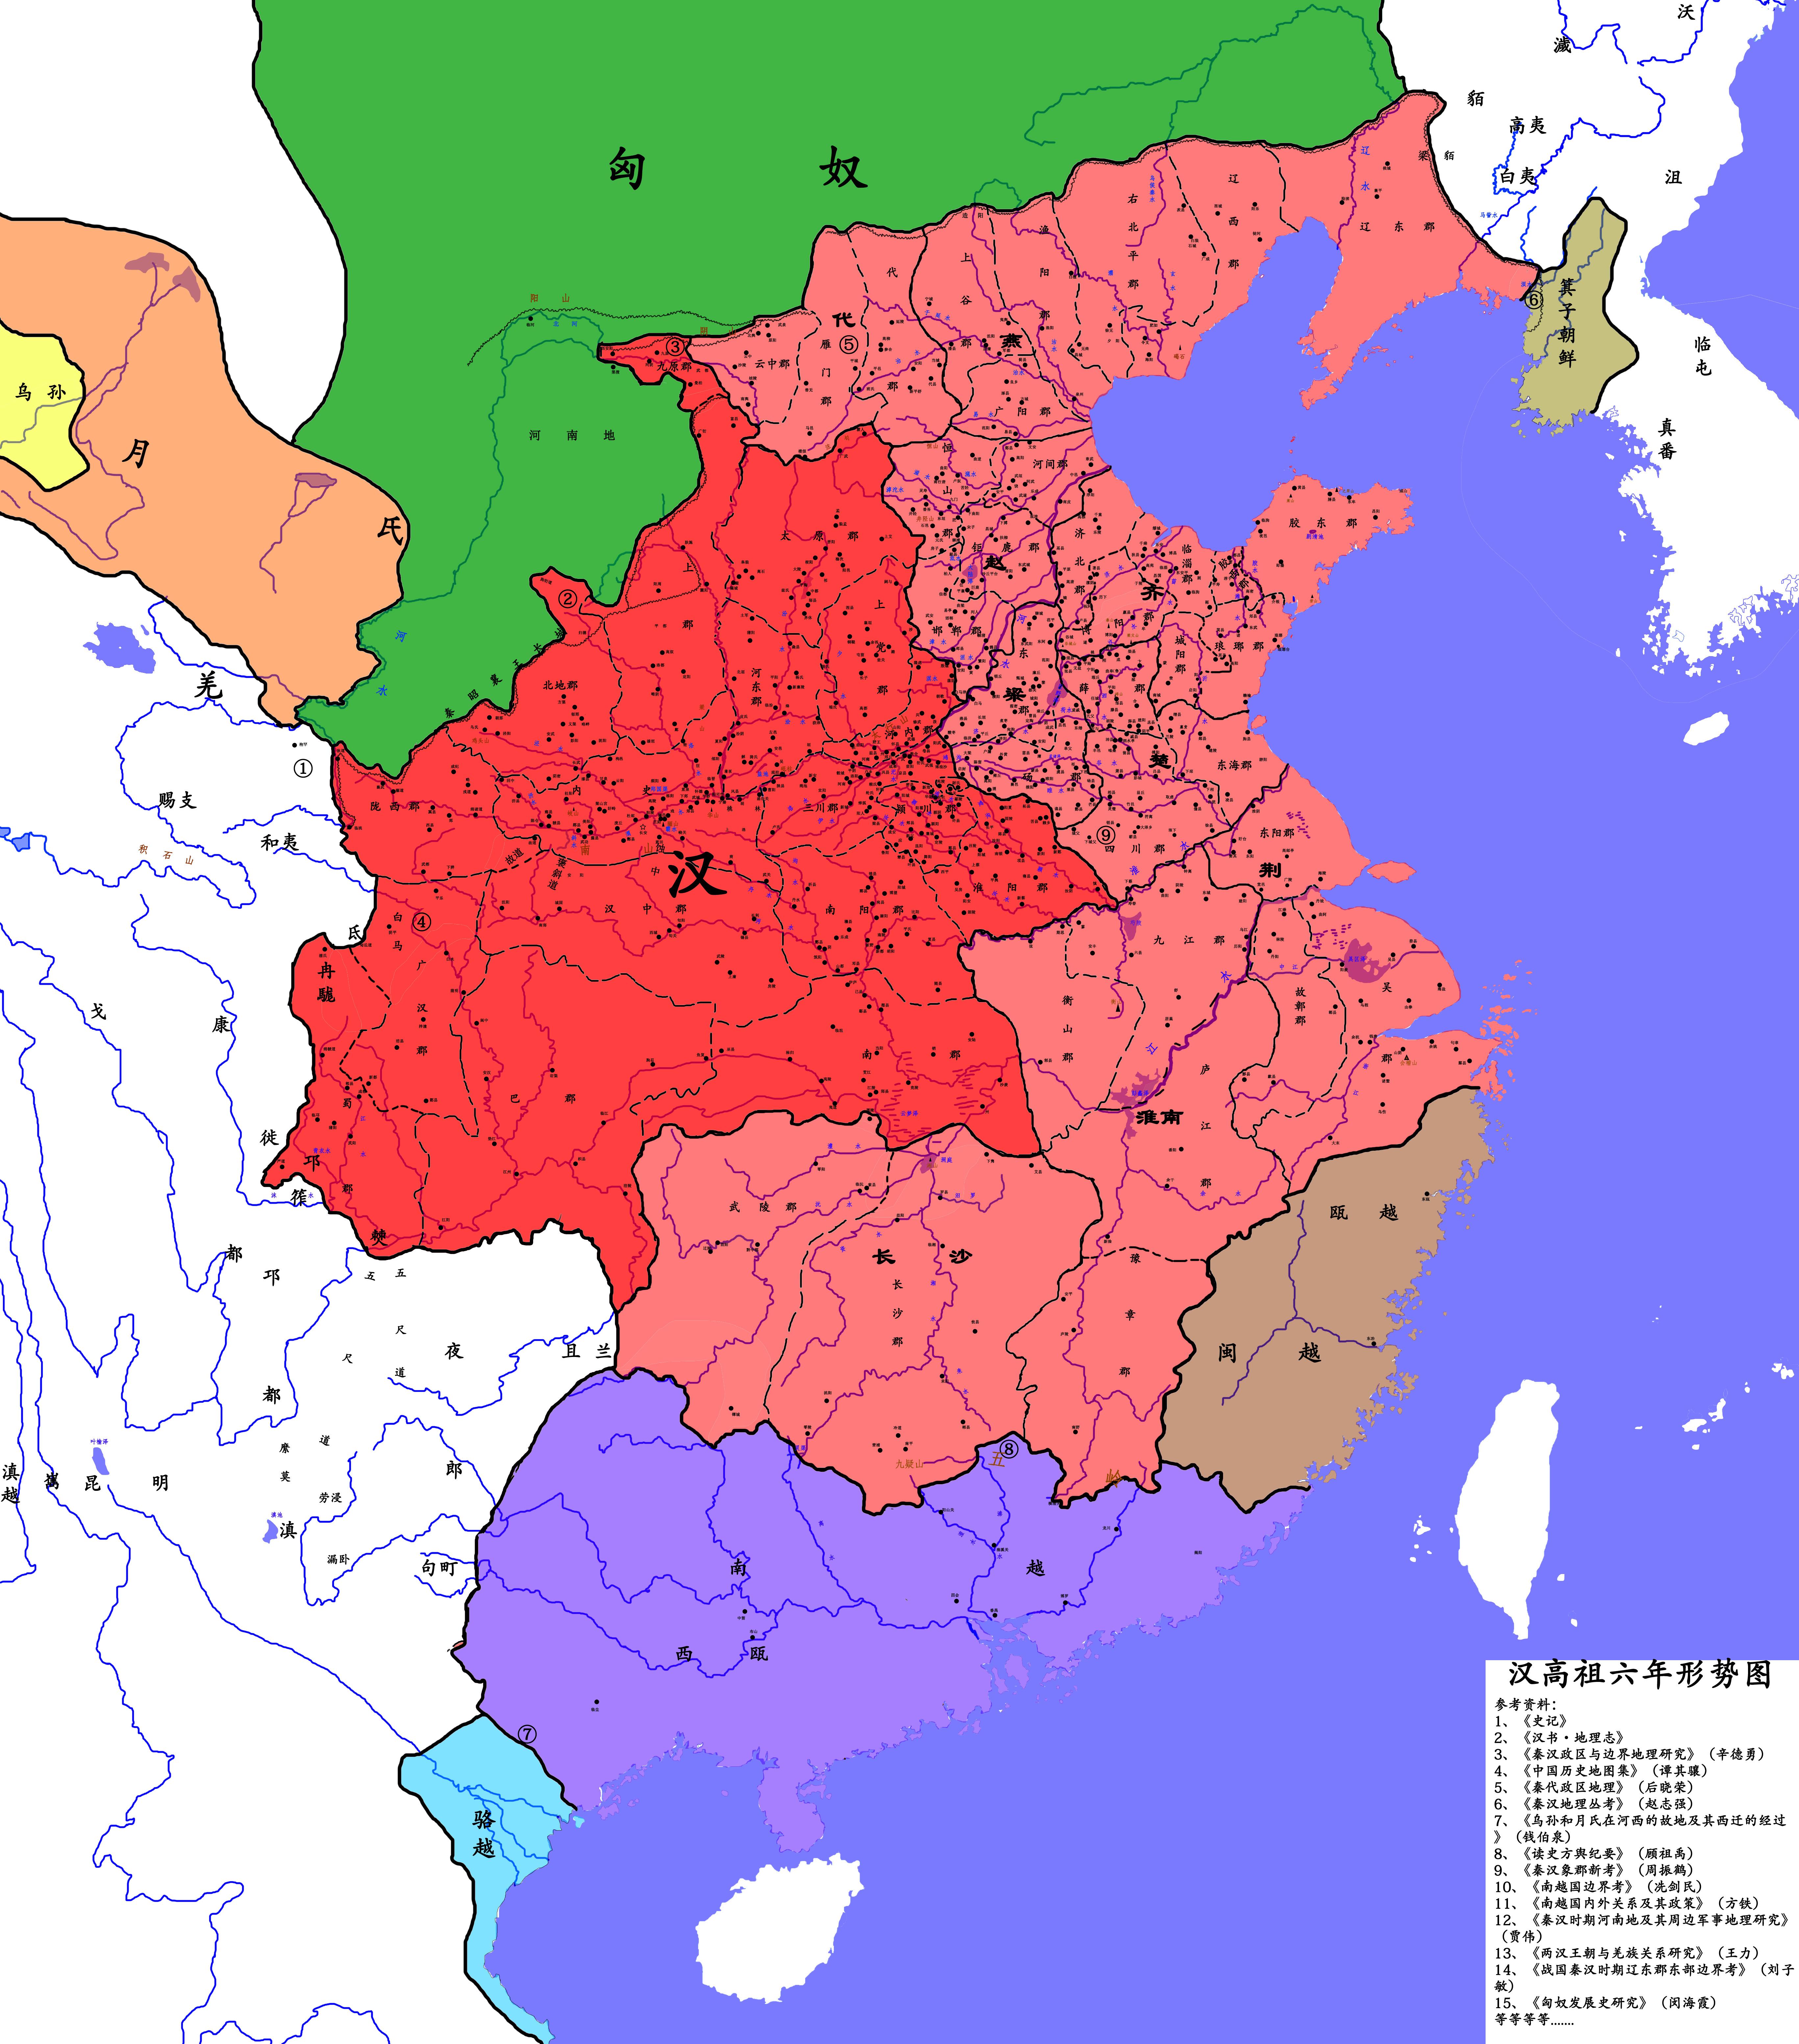 其中,汉朝中央直辖的为75%红,诸侯国则50%红标出,诸侯国,中央之间边界